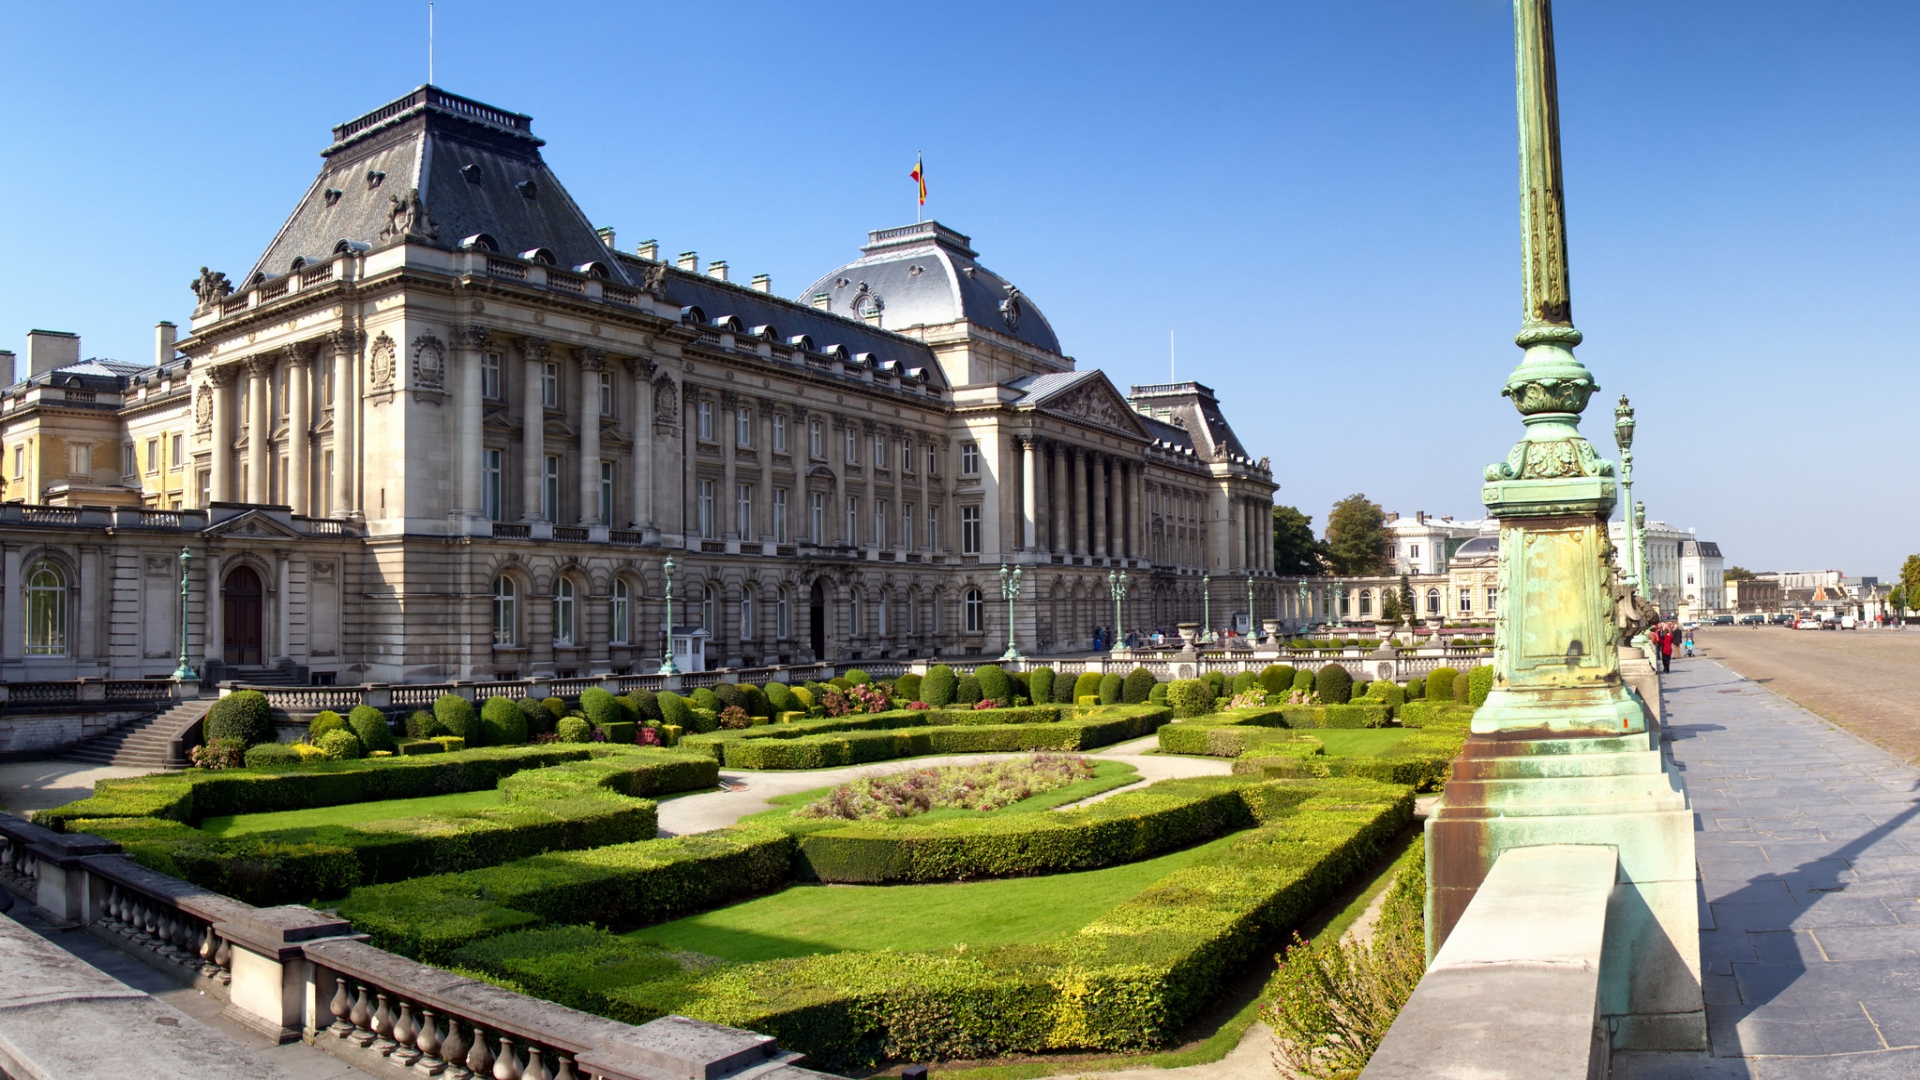 Скачать обои Королевский Дворец В Брюсселе на телефон бесплатно